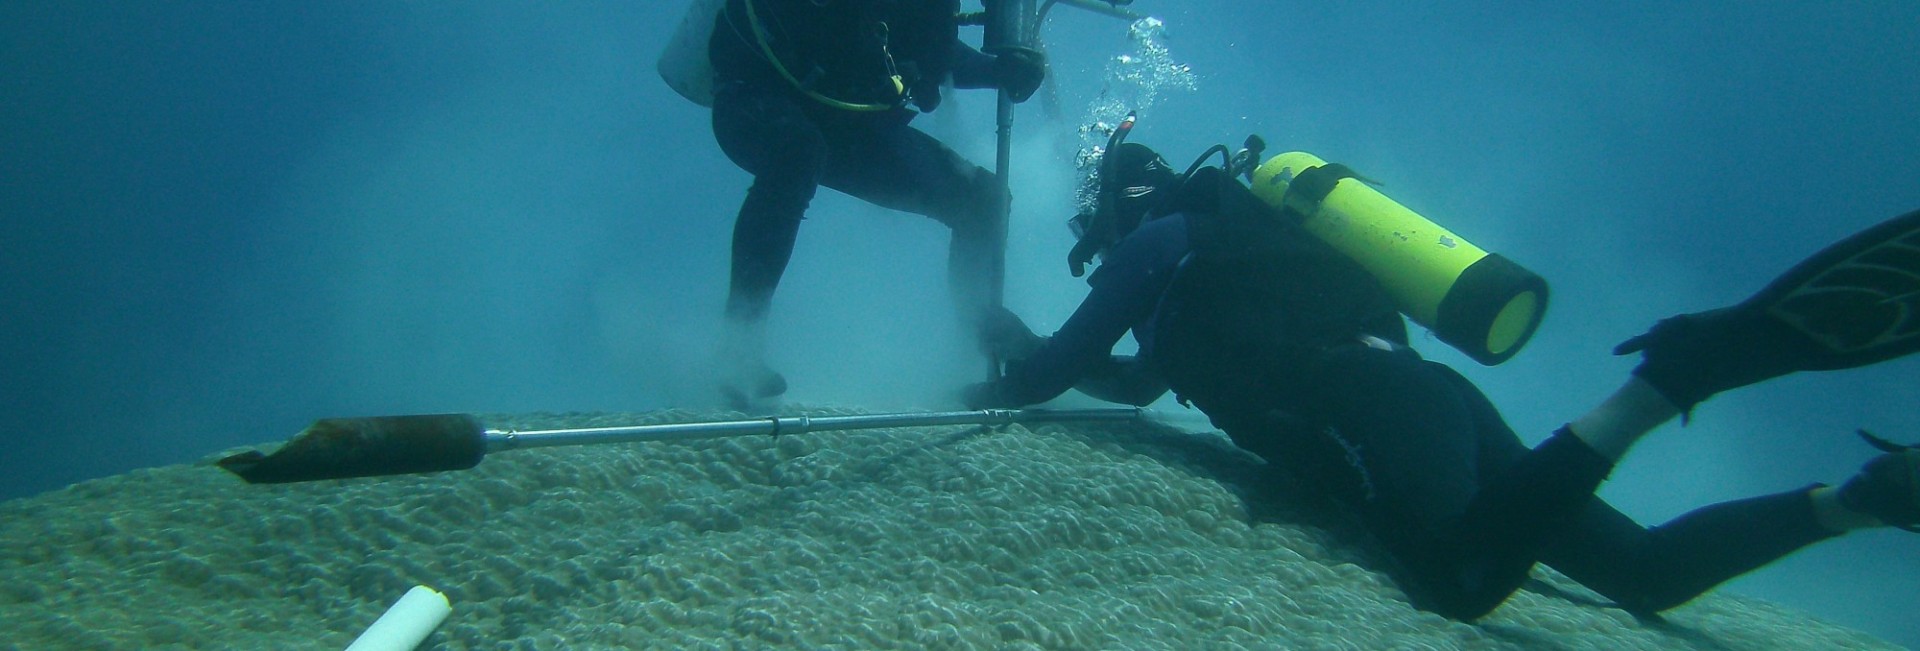 Divers examining coral